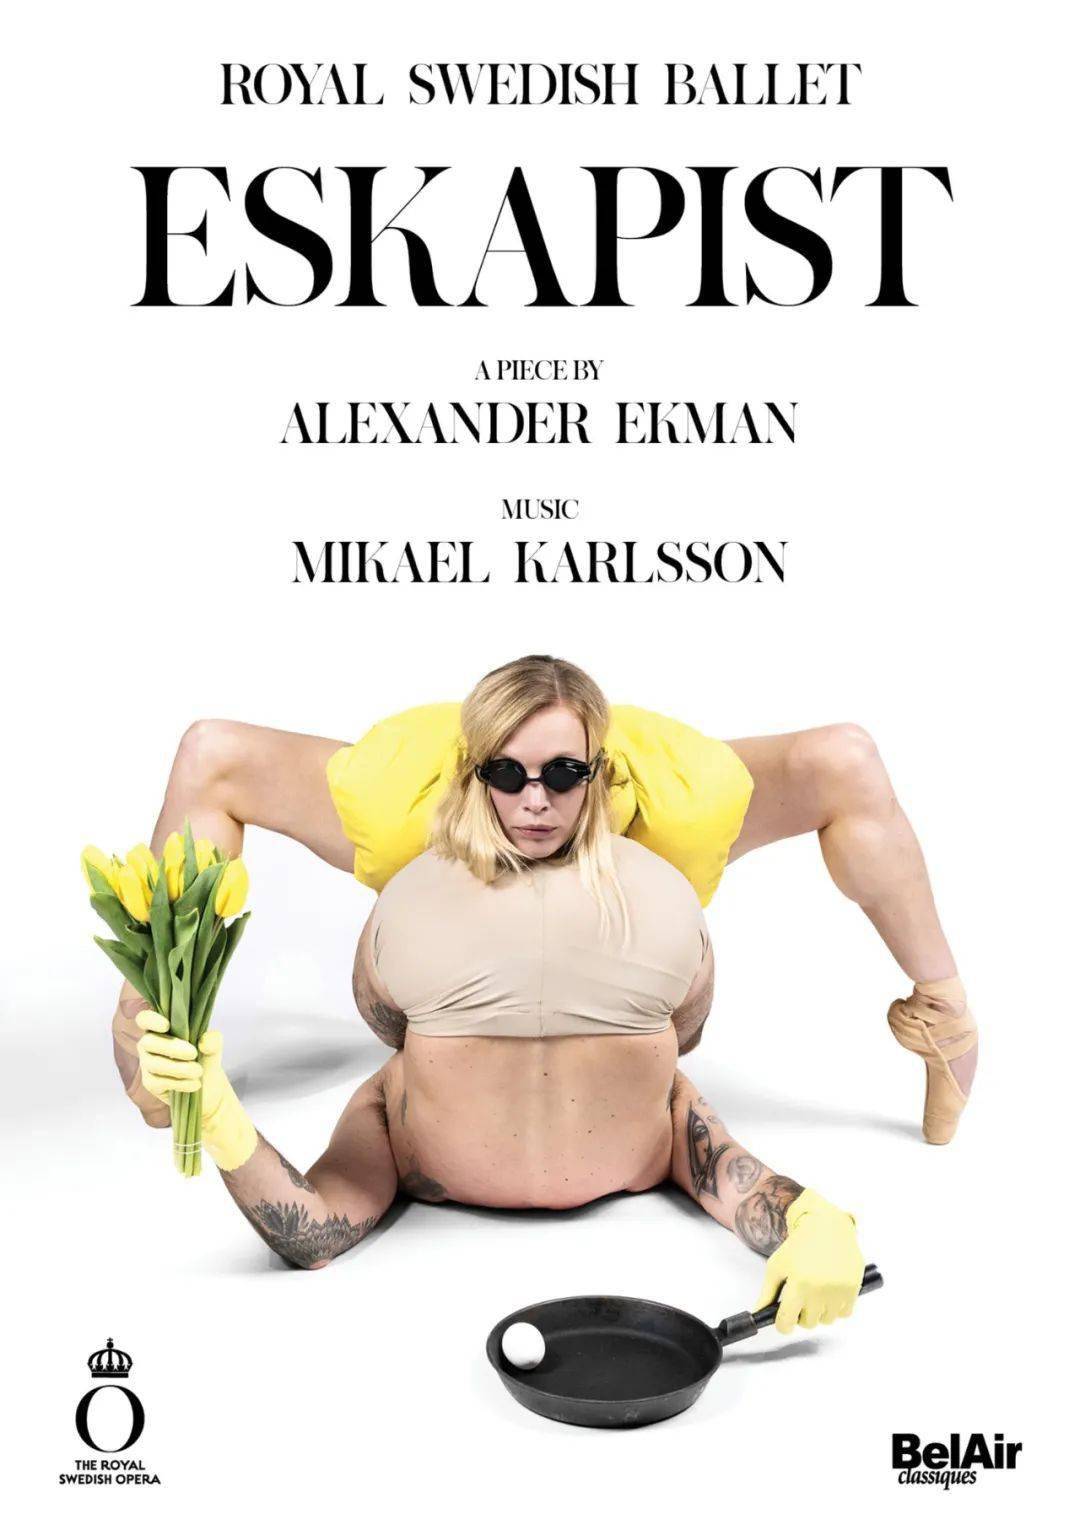 原创版小苹果舞蹈:线上艺术 | 亚历山大·艾克曼 -【 The Eskapist】-第1张图片-平心在线